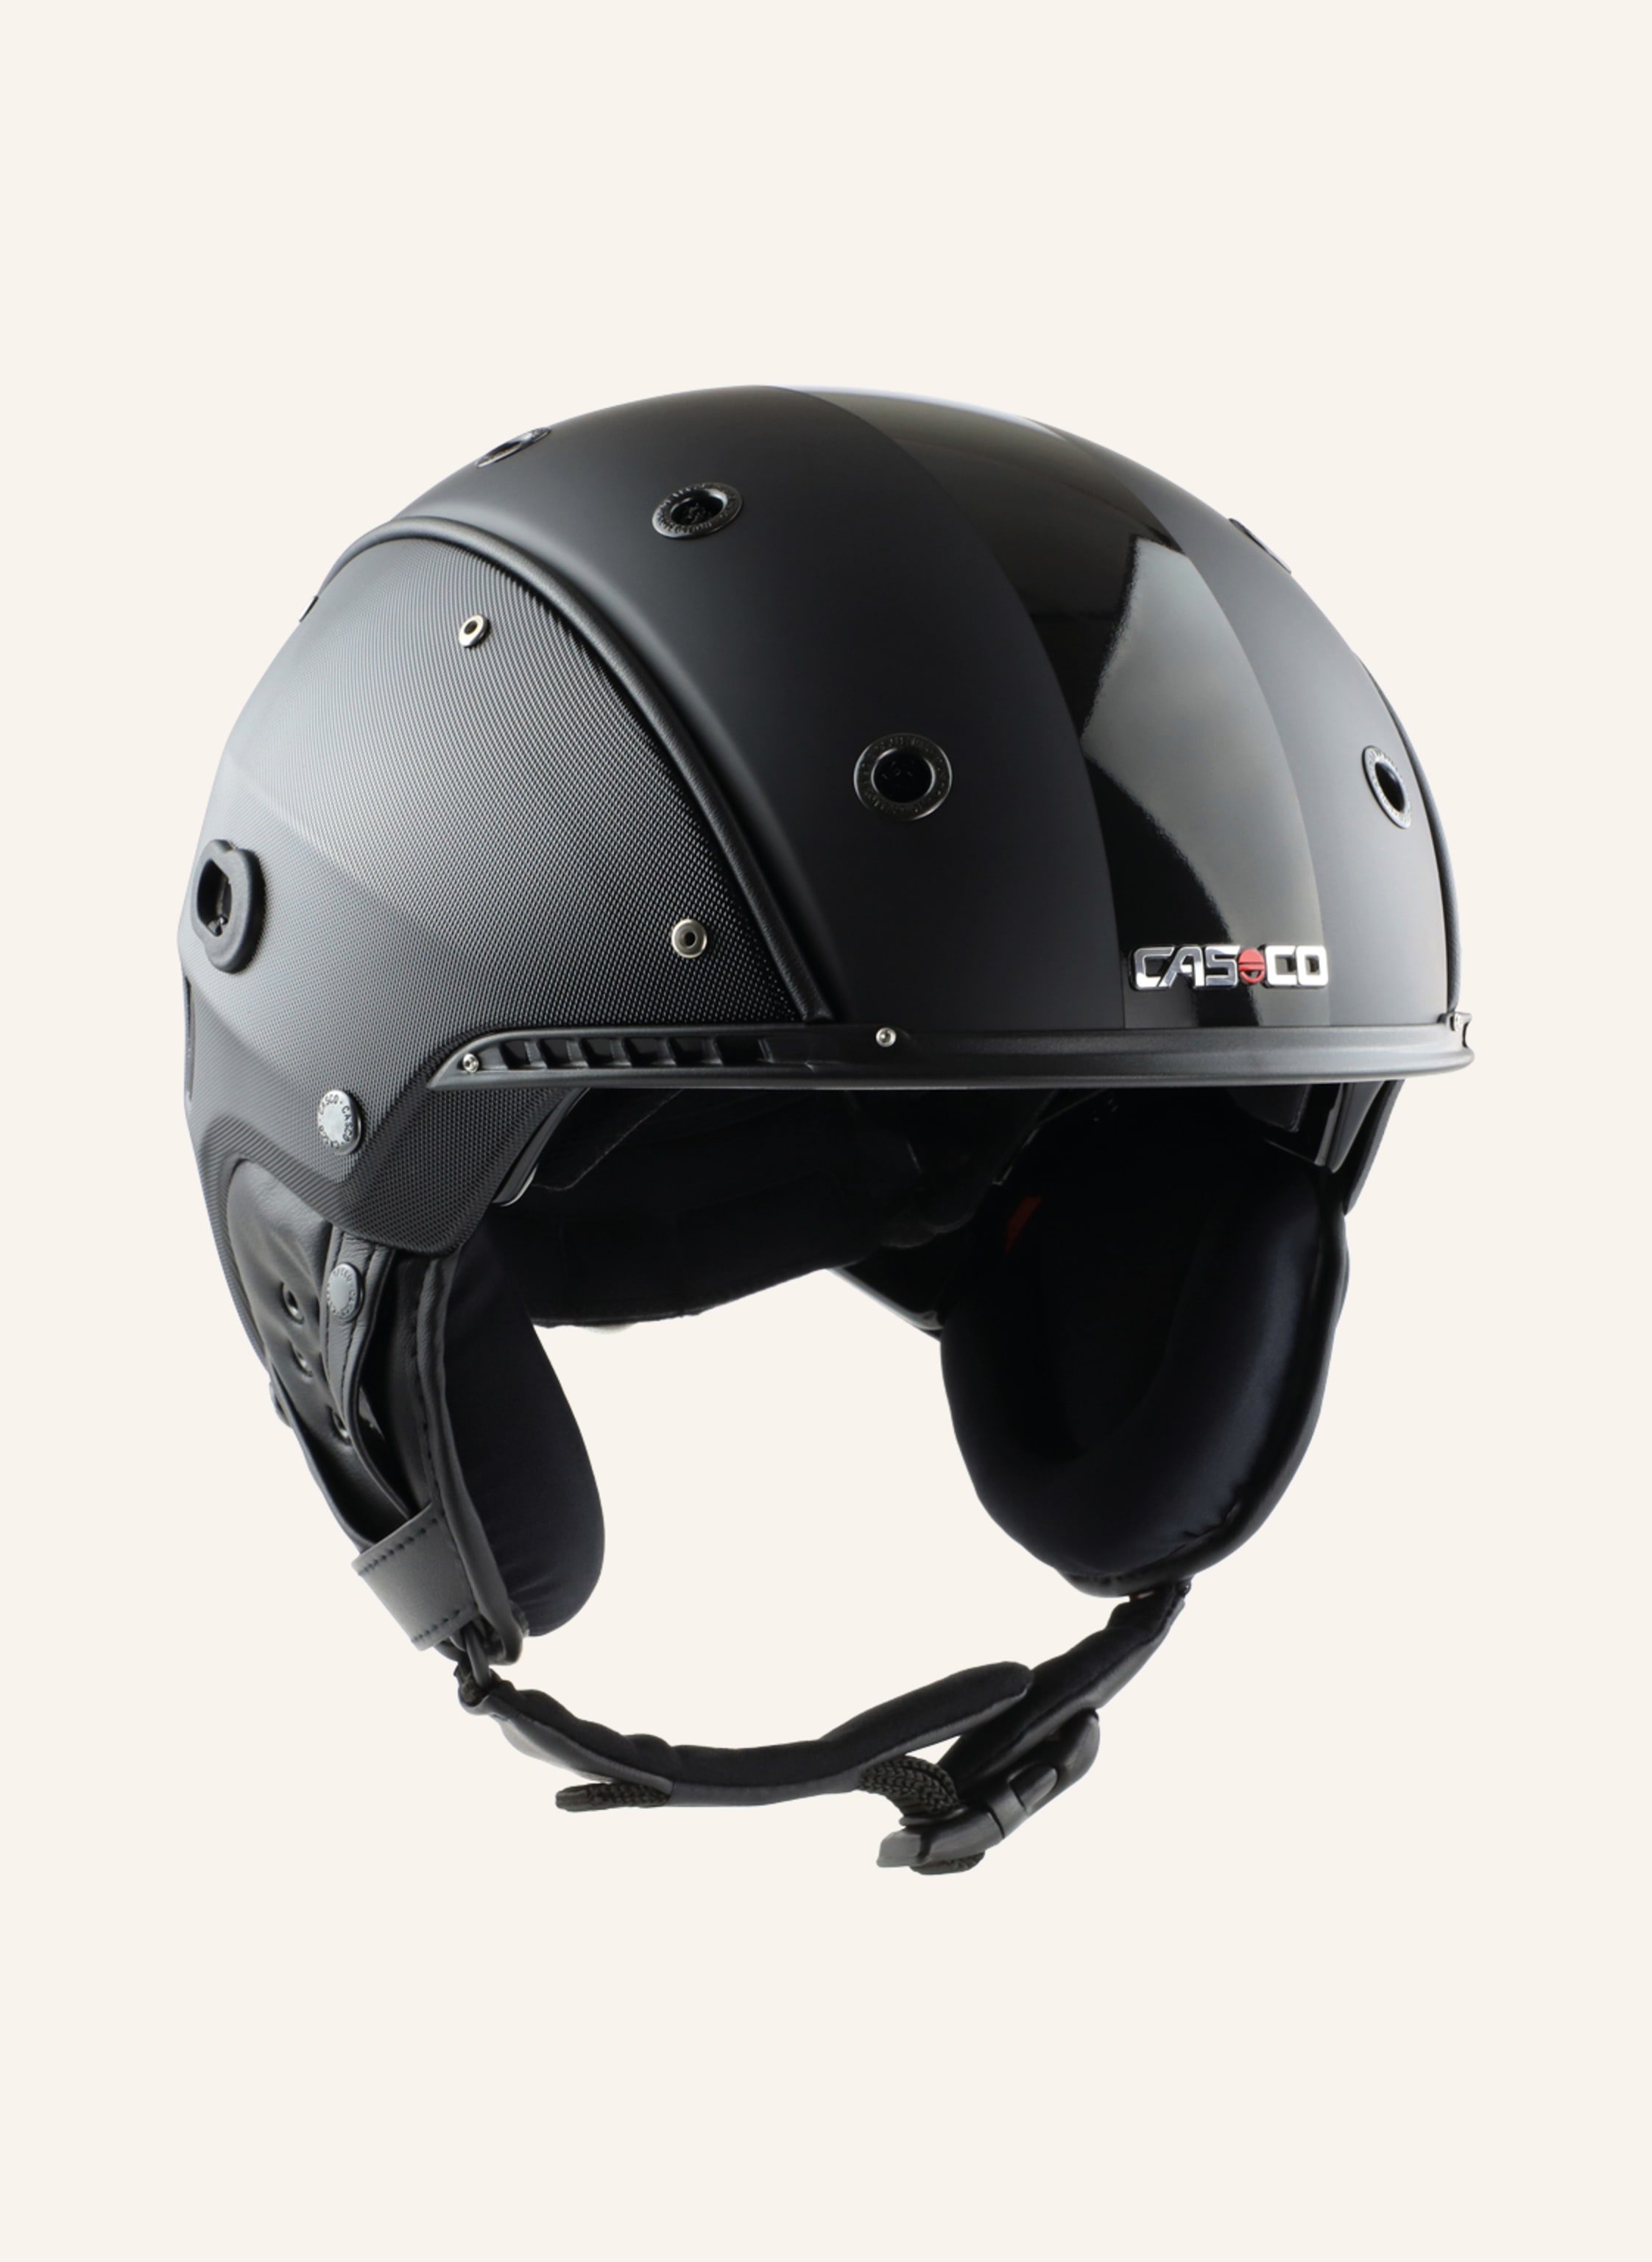 exegese Uitstroom maak een foto CASCO Ski helmet SP-4 in black | Breuninger